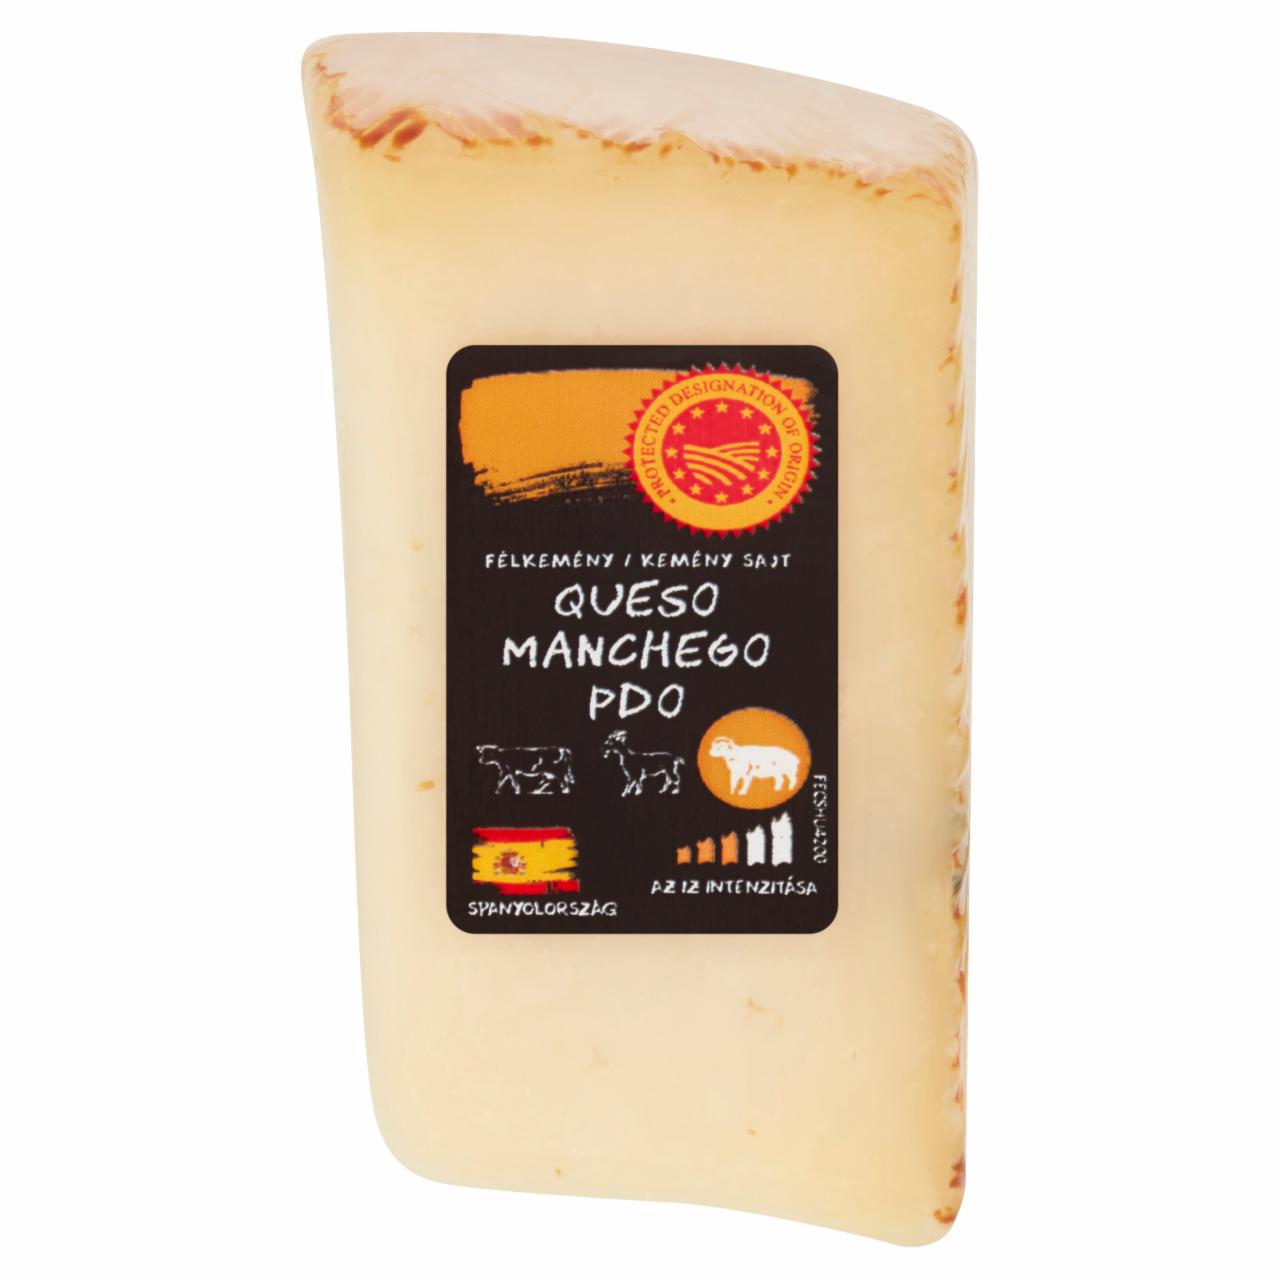 Képek - Queso Manchego félkemény/kemény sajt